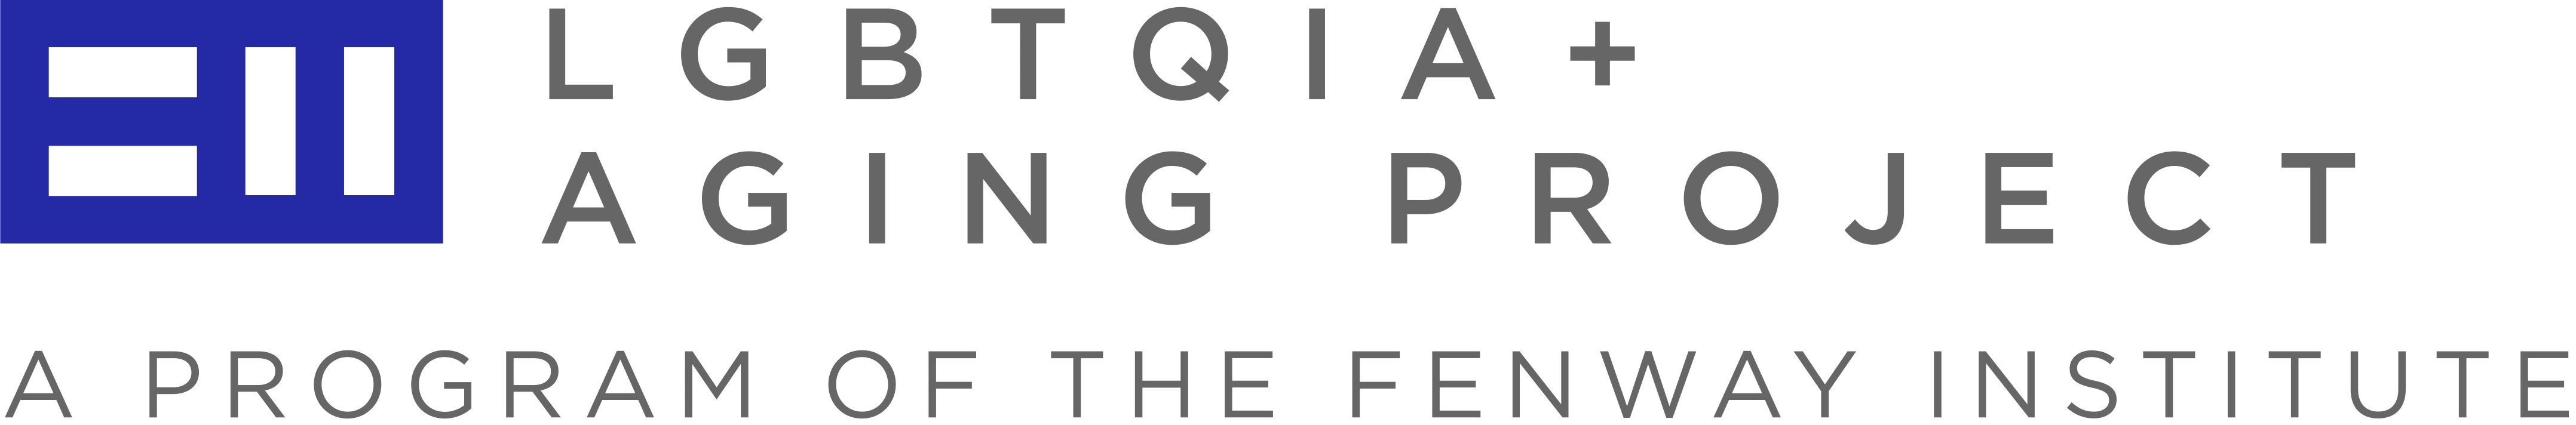 Fenway Health Logo